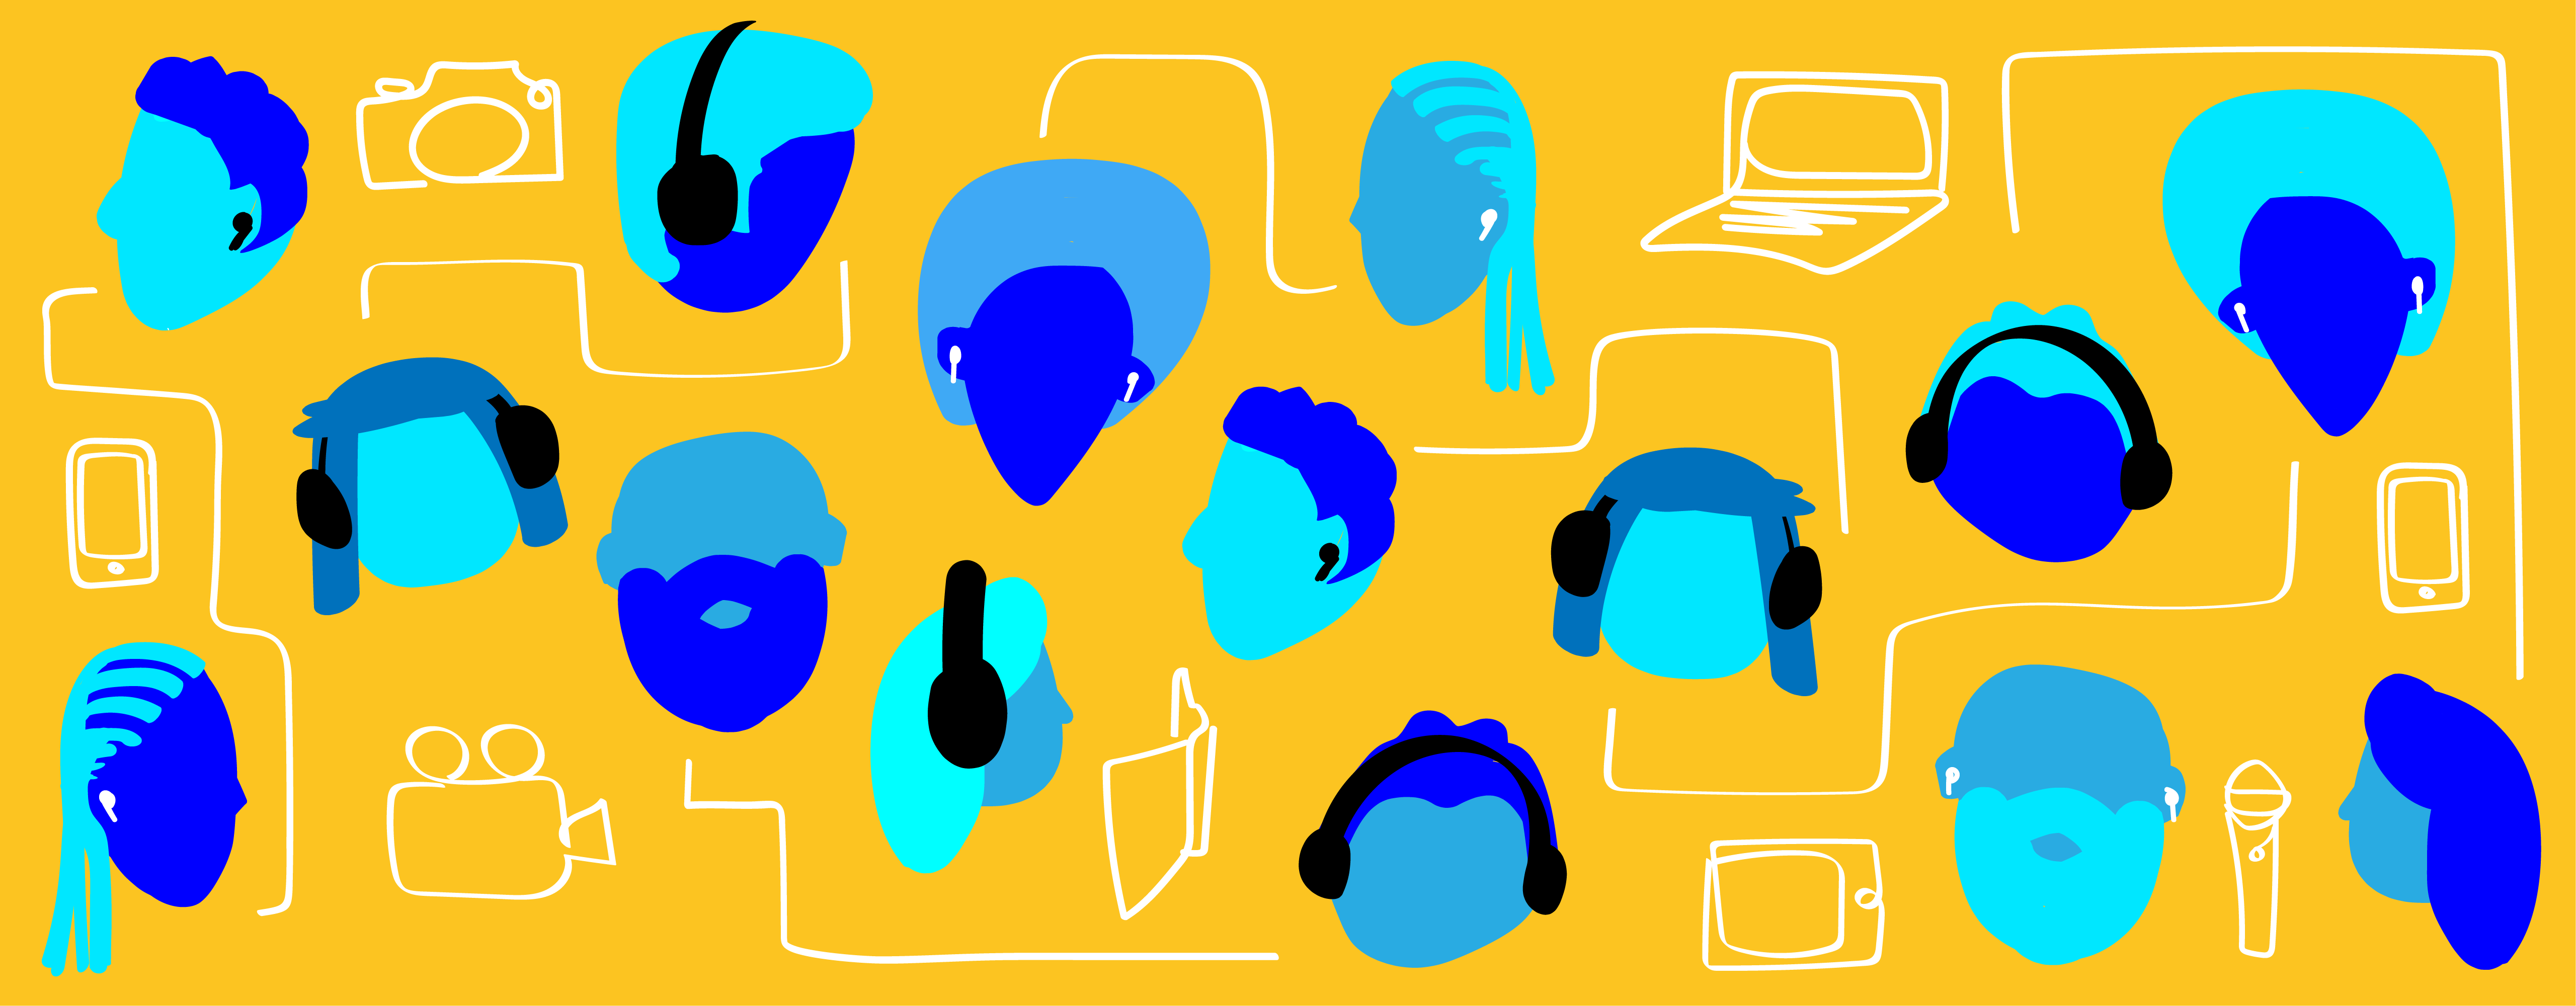 该图显示了许多头部，有些戴着耳机，以及各种设备，例如笔记本电脑，电话和平板电脑